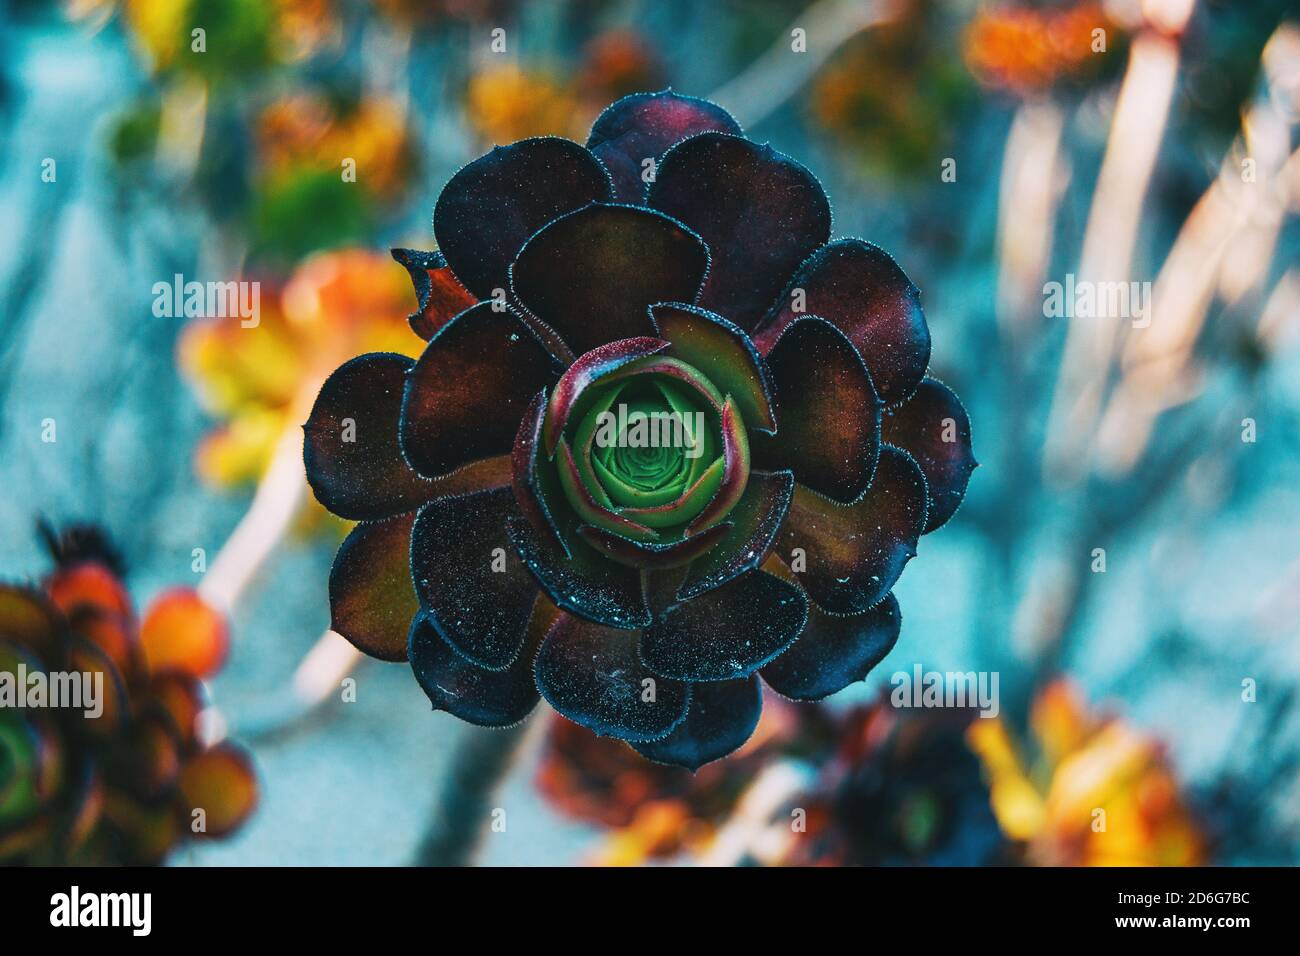 Close-up of a garnet rosette of aeonium arboreum centered in the picture Stock Photo